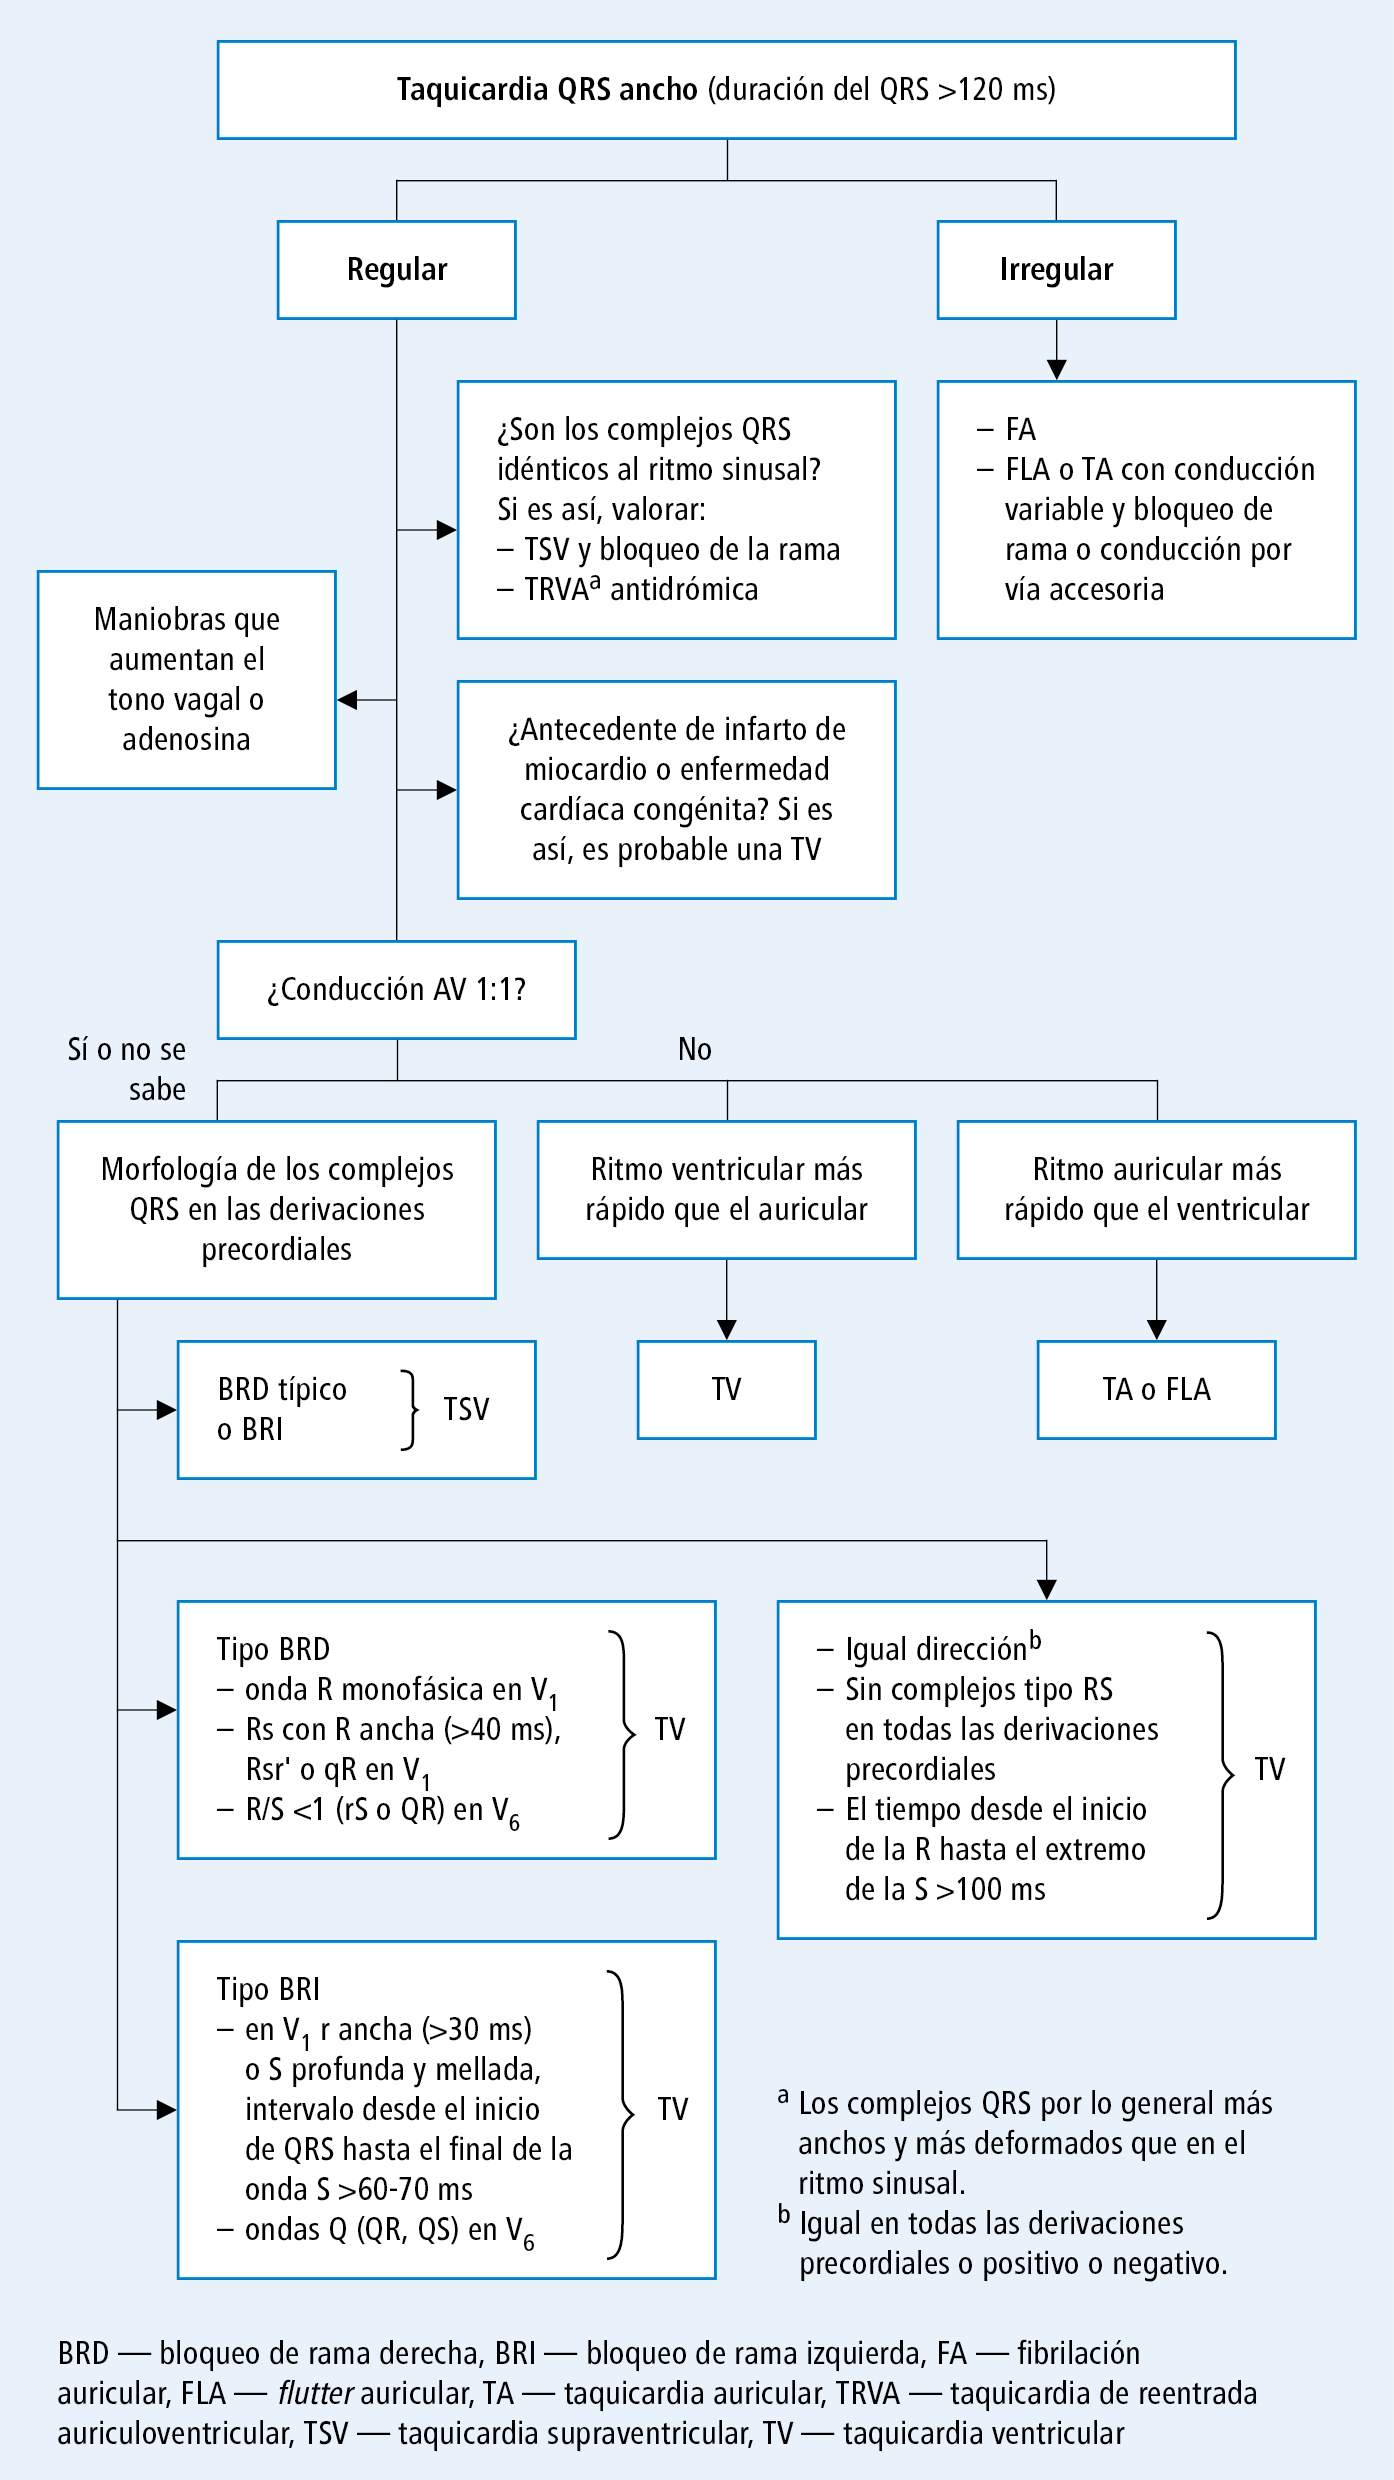  Diagnóstico diferencial de la taquicardia QRS ancho (según las guías de la ACC, AHA y ESC 2006 y el acuerdo de la EHRA 2016, modificado) 